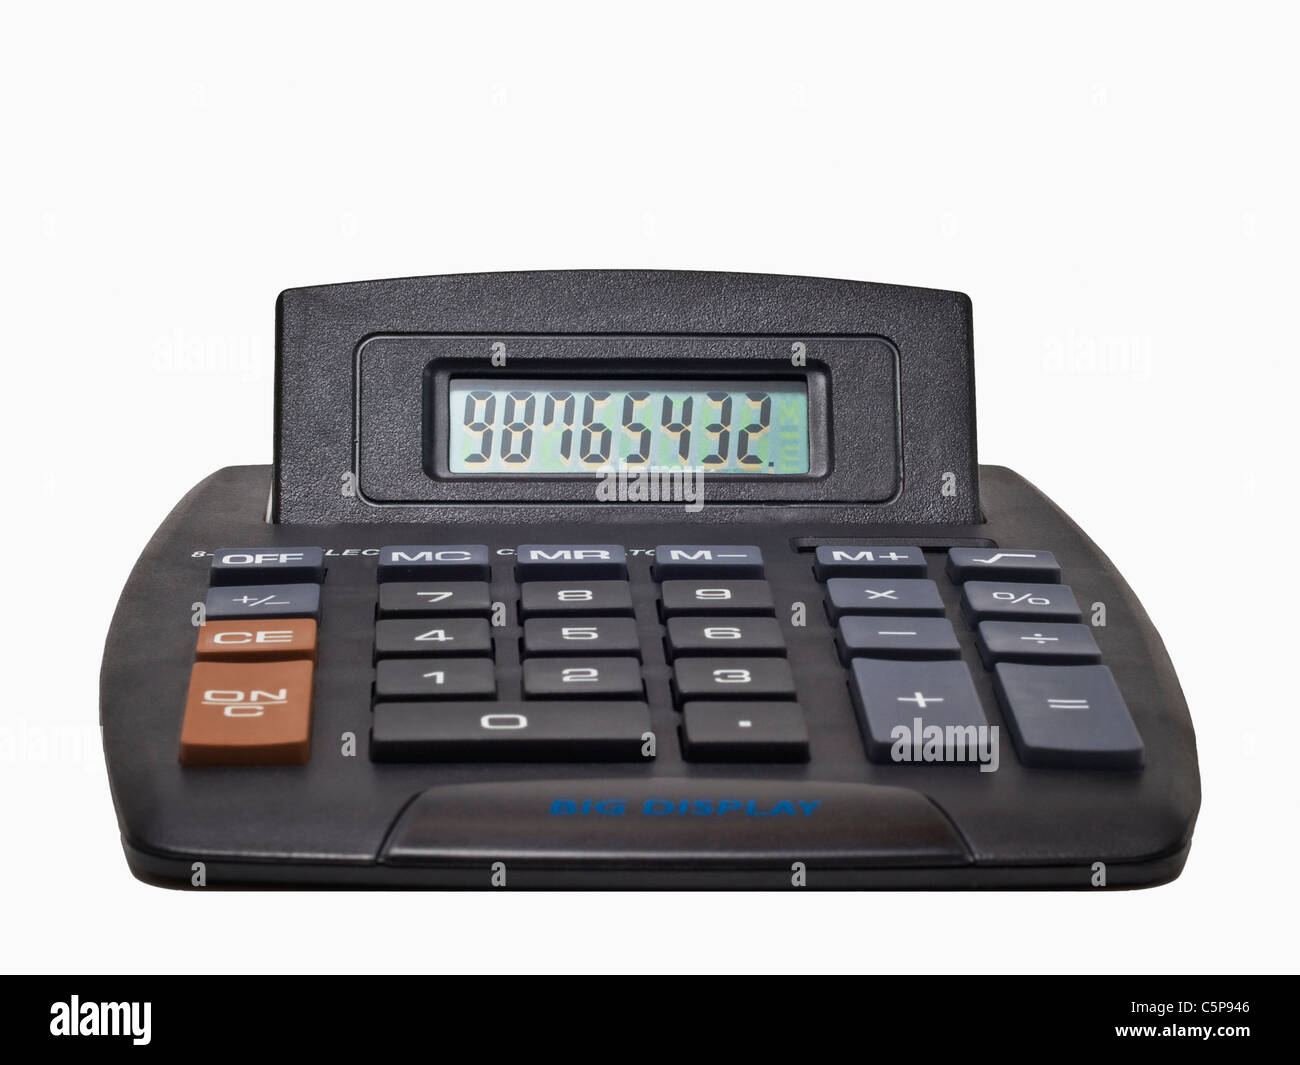 Detailansicht eines Taschenrechners | Dettaglio foto di una calcolatrice tascabile Foto Stock